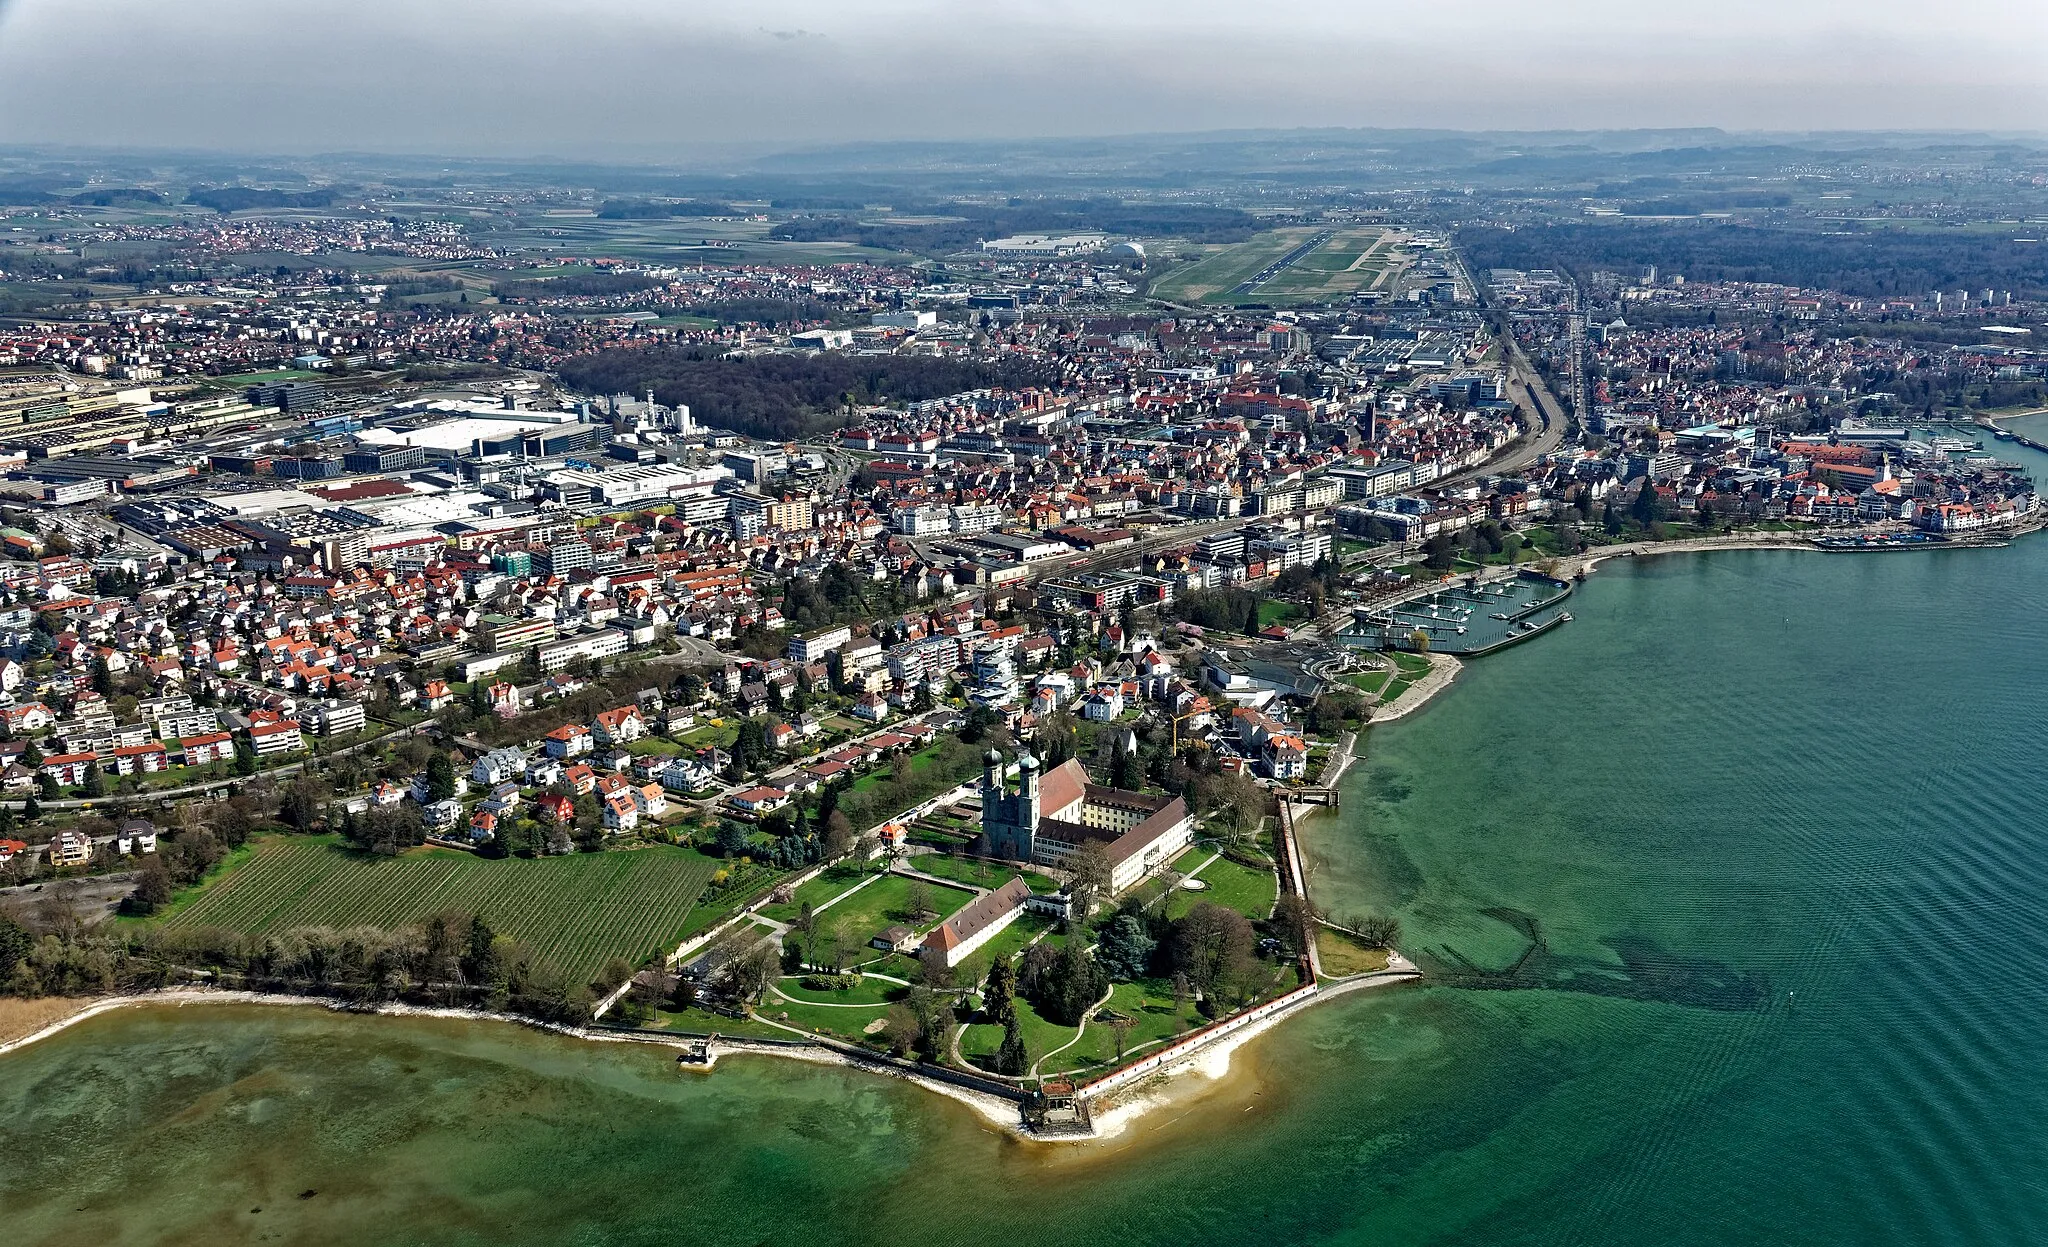 Image of Friedrichshafen